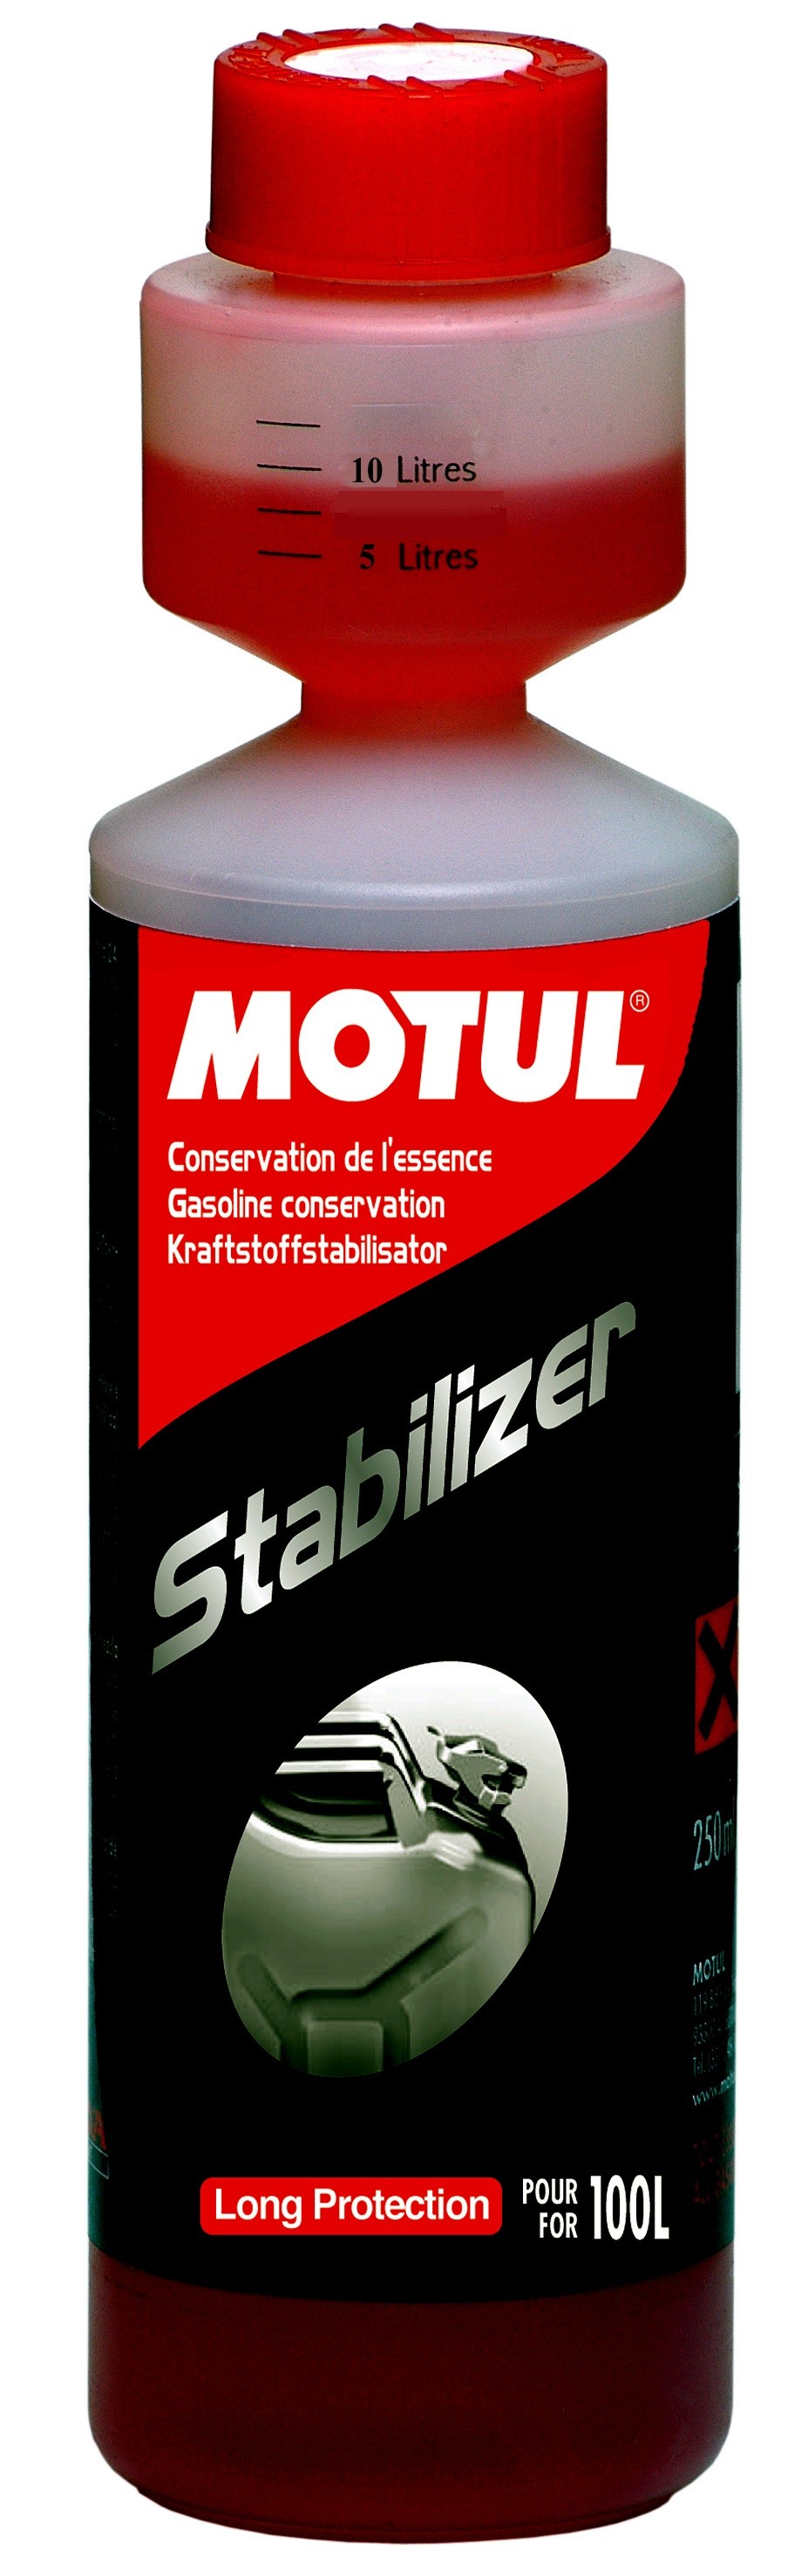 Motul Stabilizer conservateur d'essence 250 ml